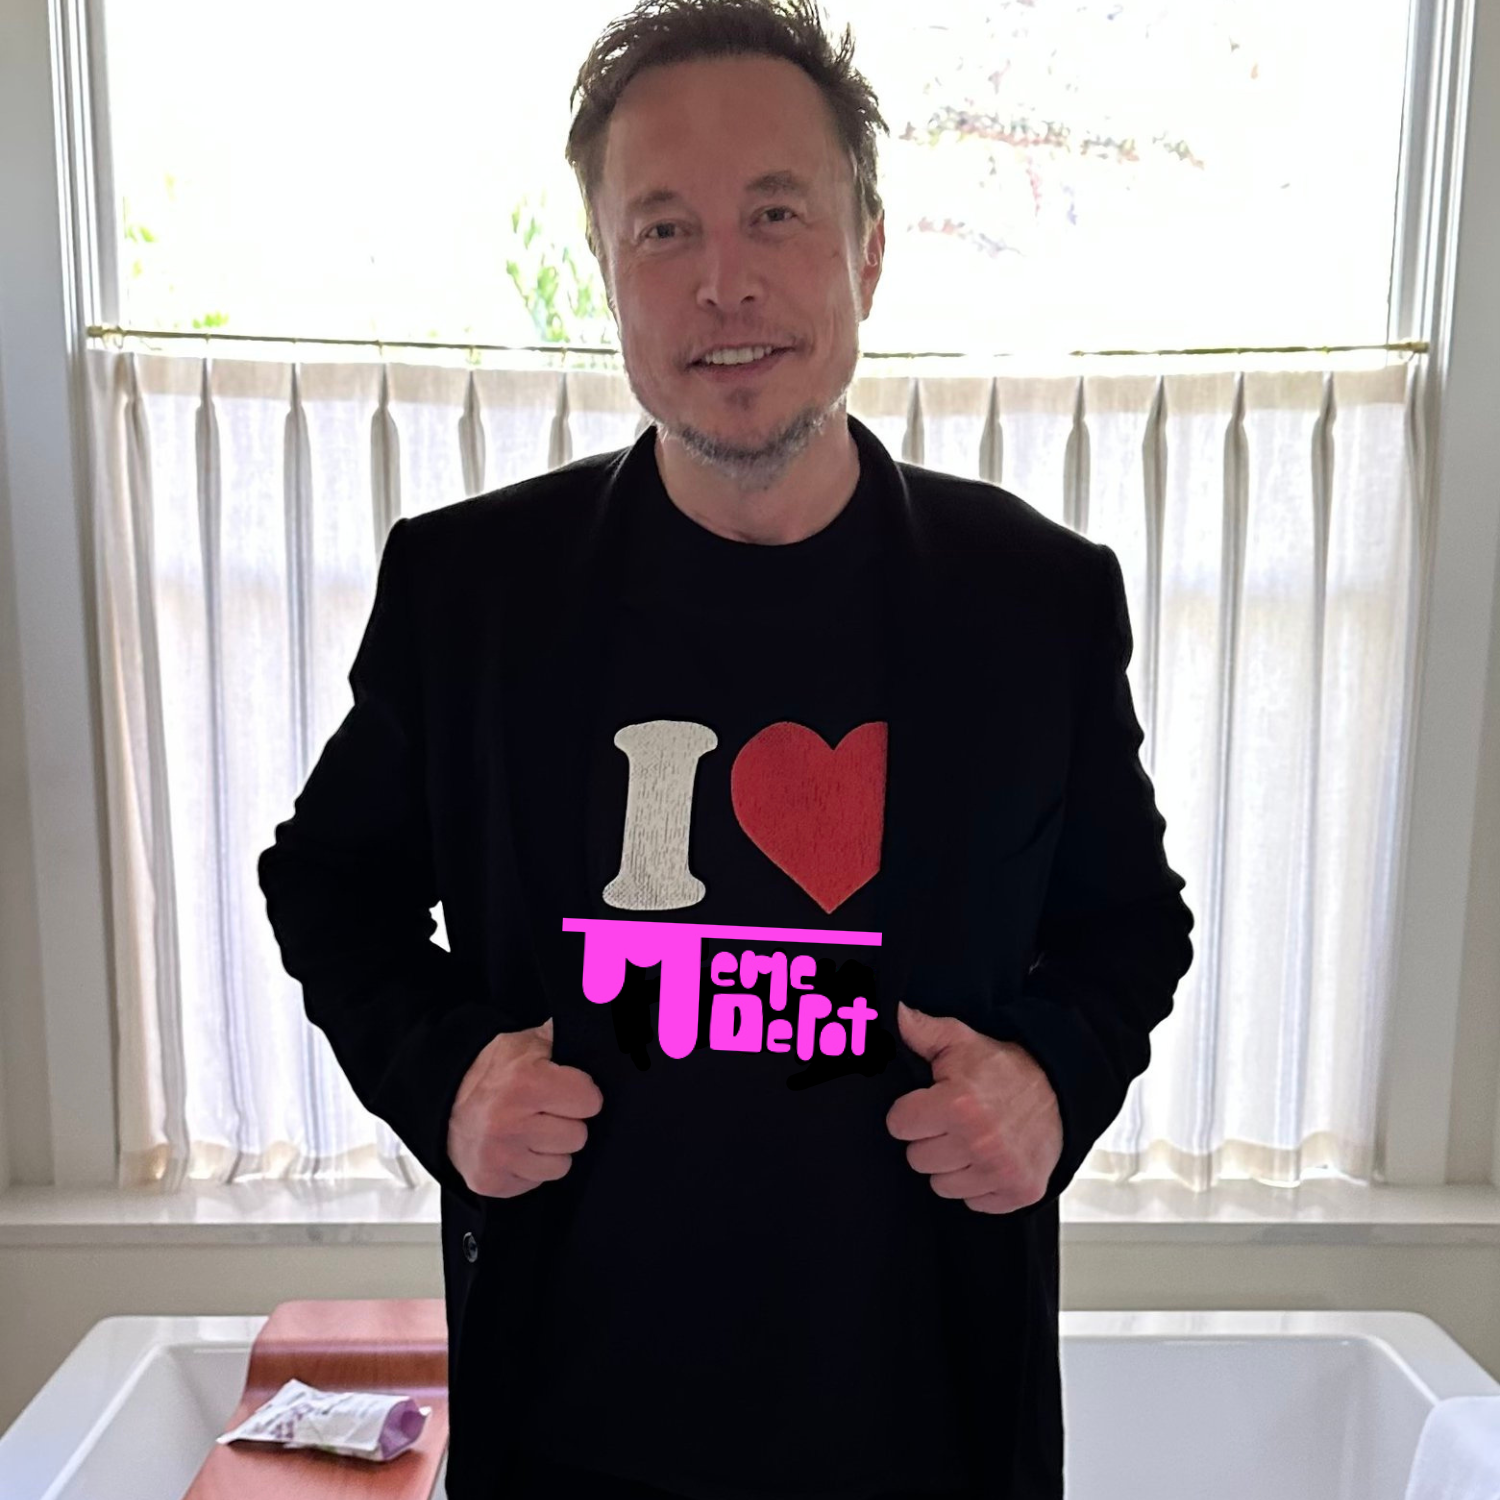 Elons Musk